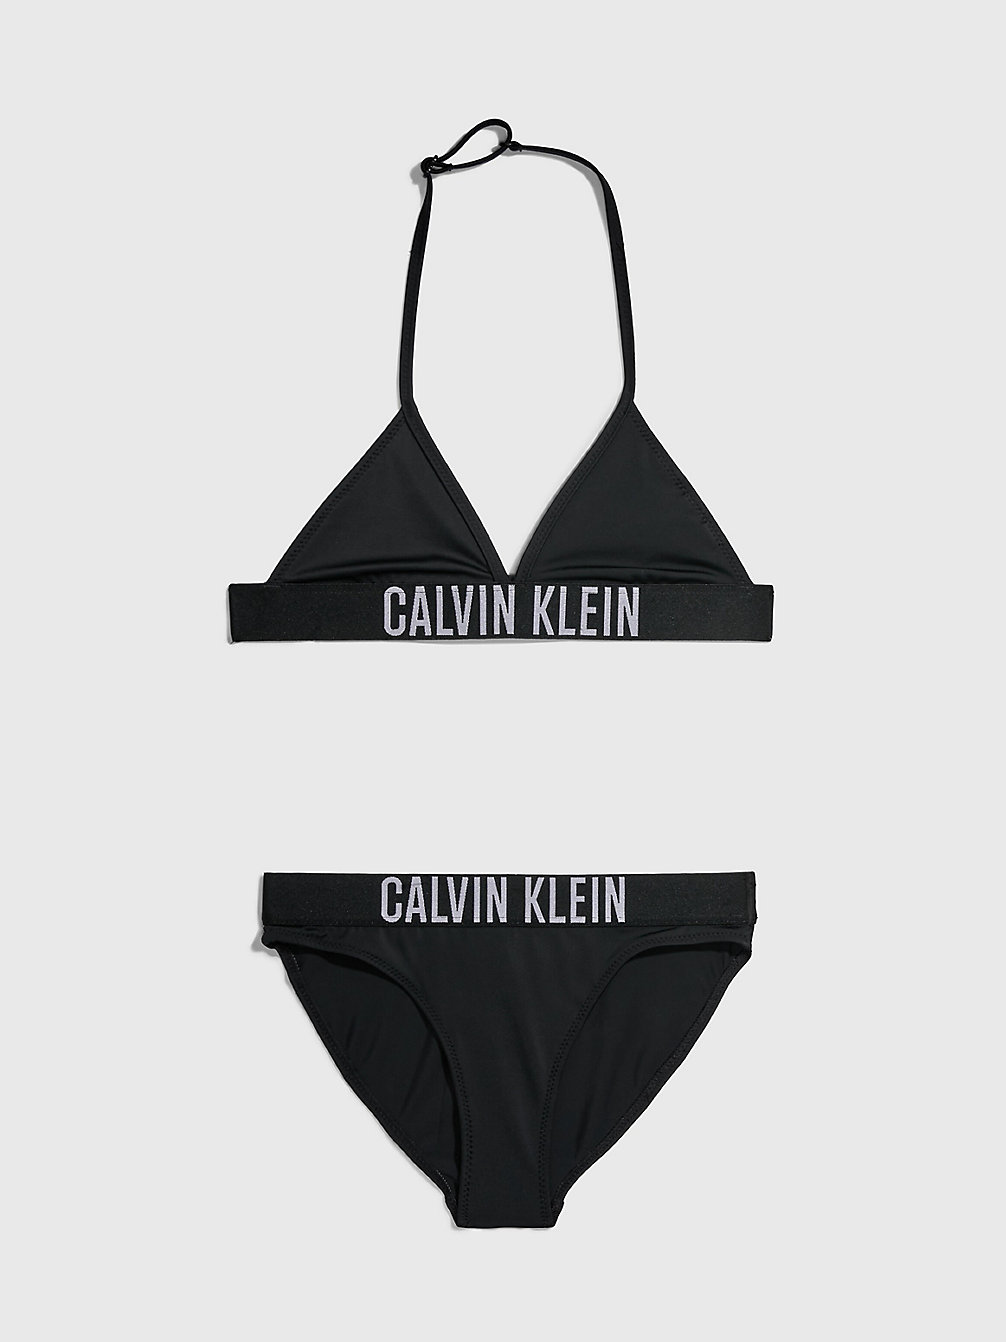 PVH BLACK Girls Triangle Bikini Set - Intense Power undefined girls Calvin Klein